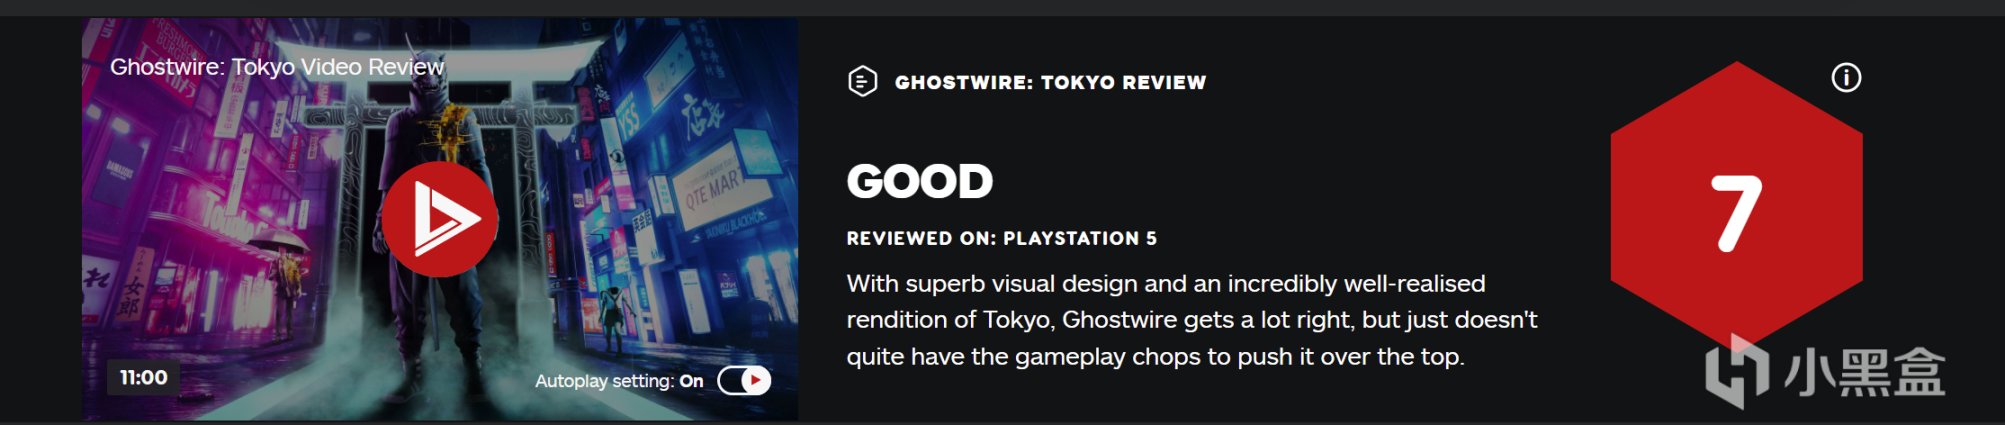 《幽靈線:東京》媒體評分解禁: M站均分74分 其中IGN 7分、GS 8分-第6張